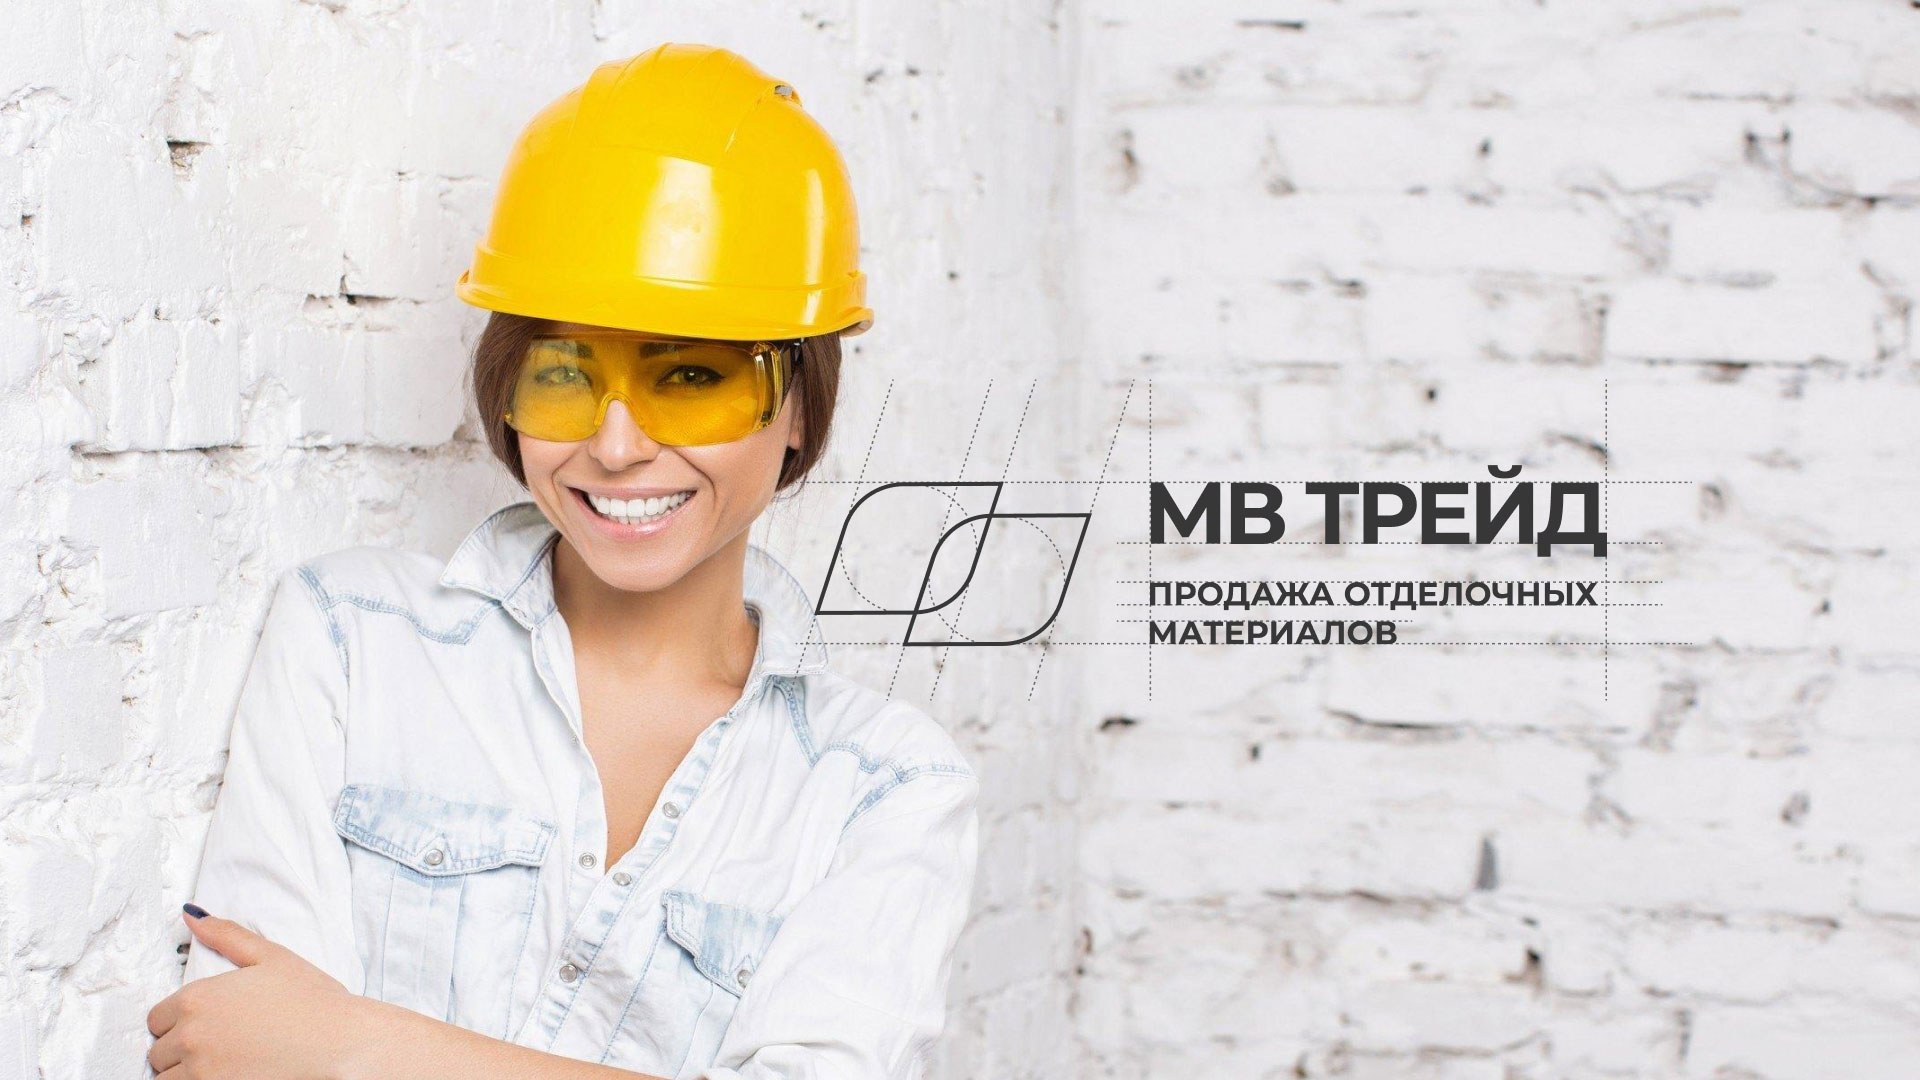 Разработка логотипа и сайта компании «МВ Трейд» в 